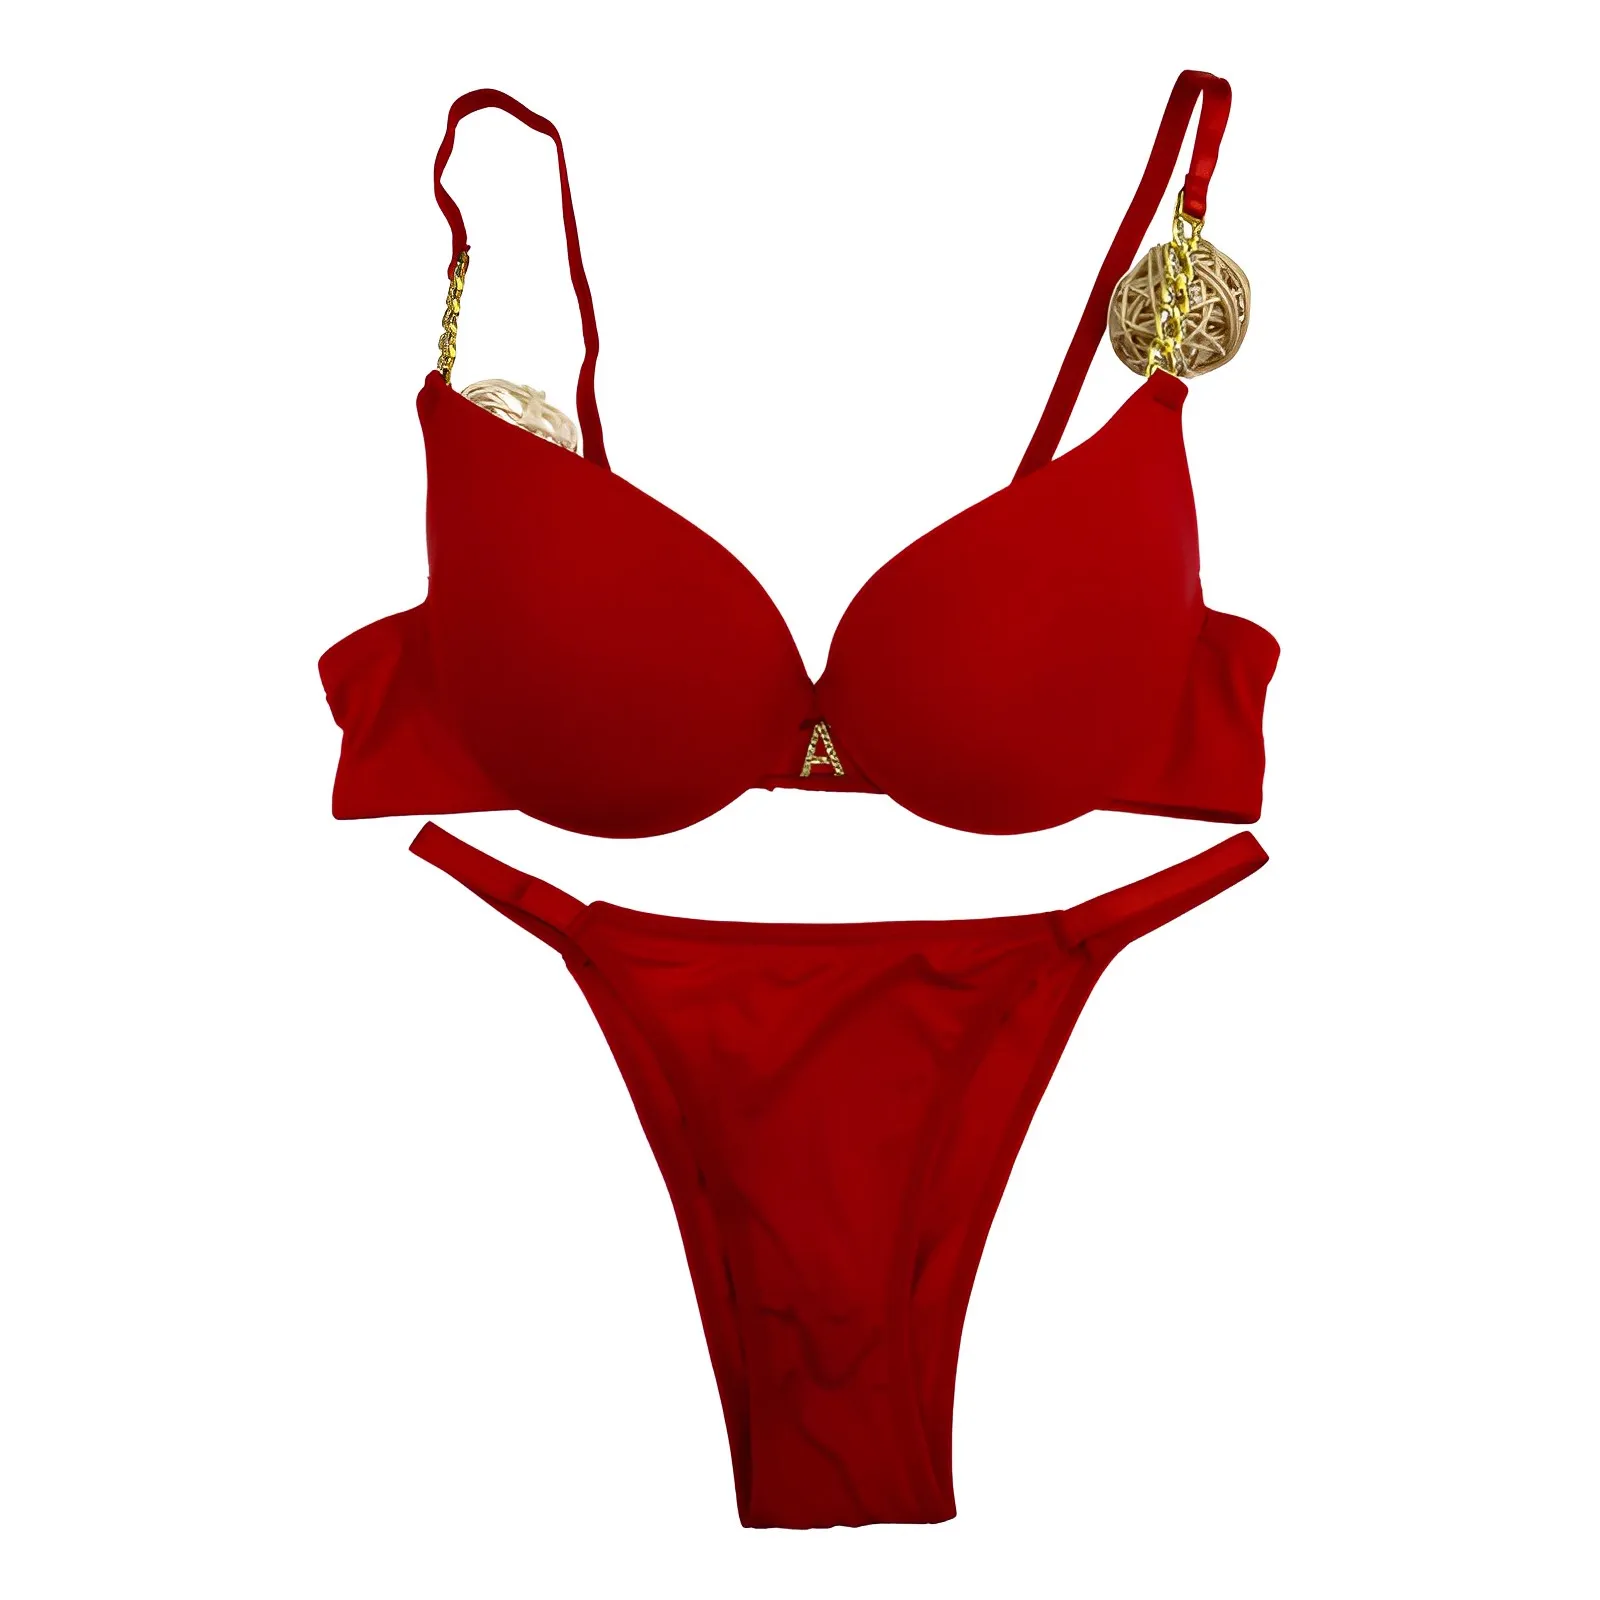 Ropa interior sexy roja cómoda de moda de alta calidad para mujer, conjunto de artículos al por mayor